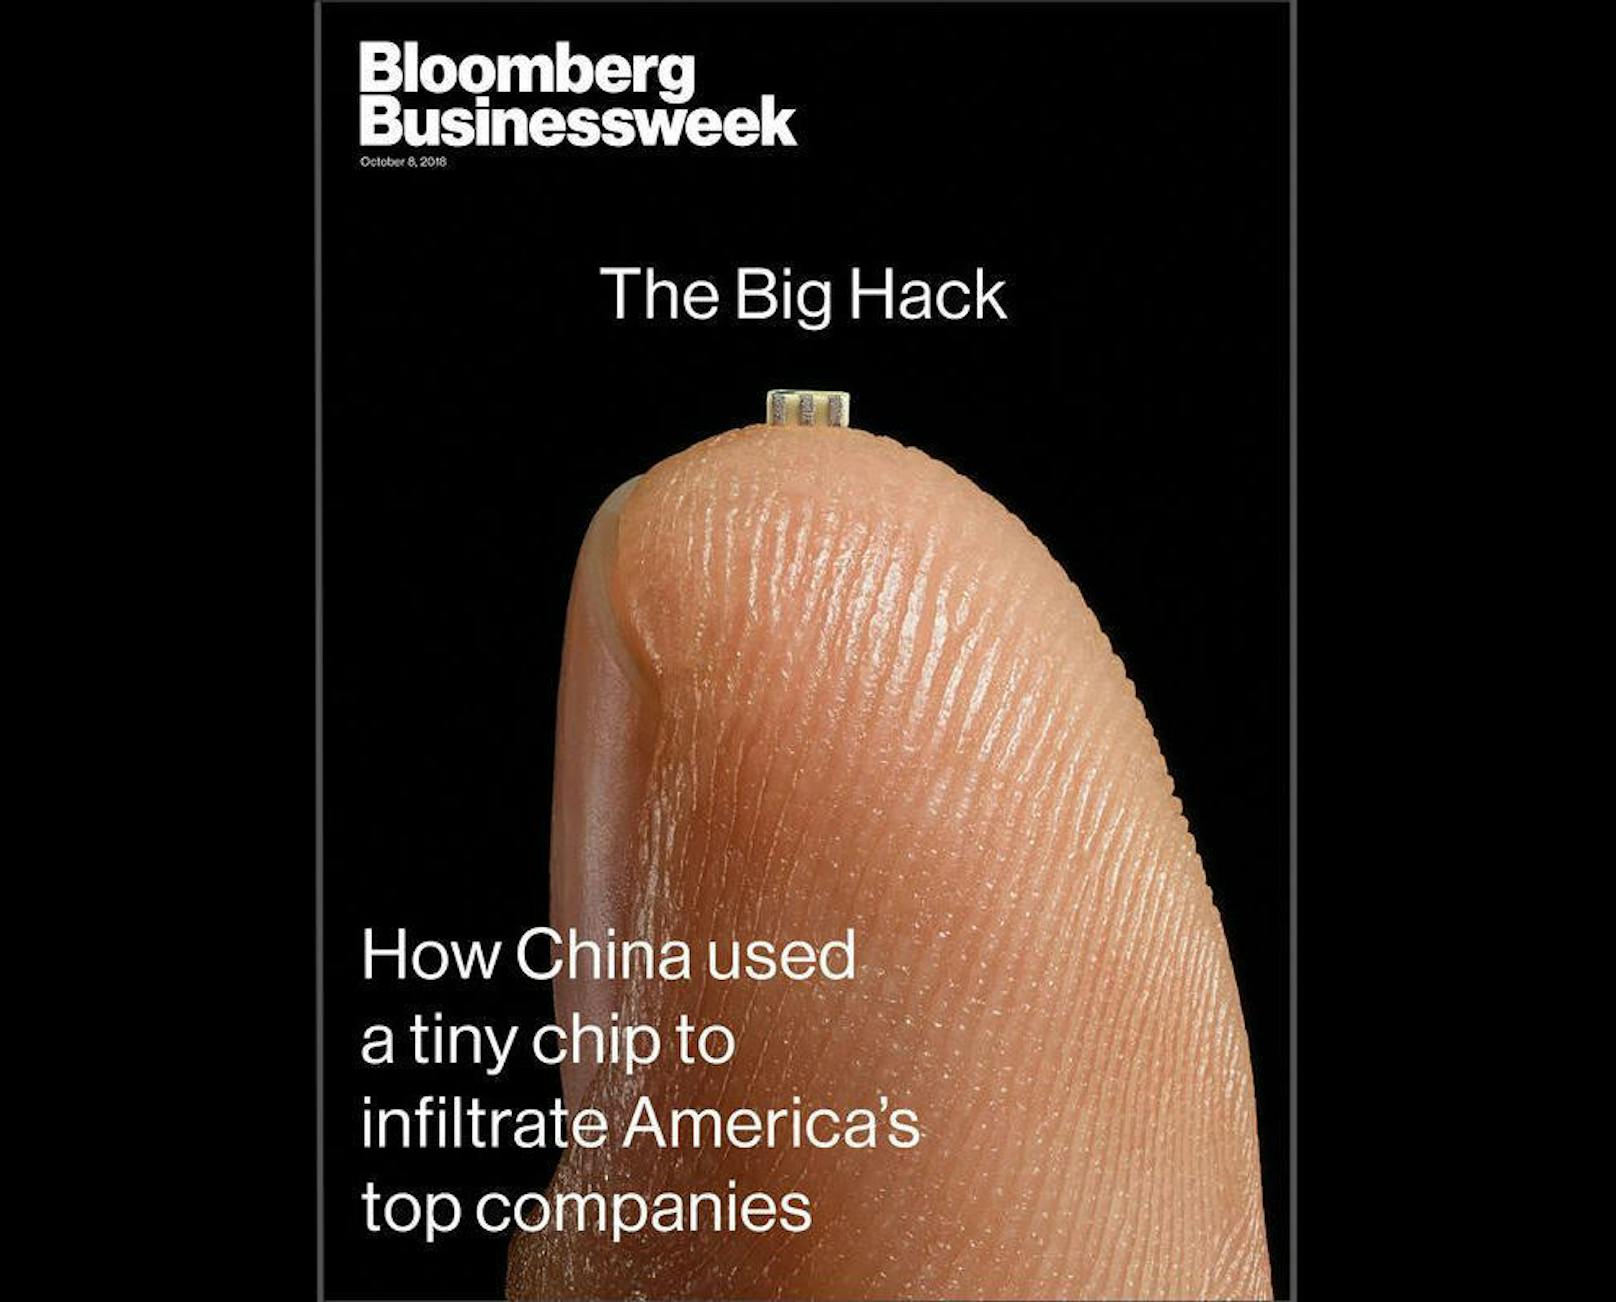 "Der große Hack ? wie China mit einem kleinen Chip die größten US-Unternehmen infiltrierte". So titelte die "Bloomberg Businessweek" Anfang Oktober 2018. Das Magazin trat damit eine weltweite Diskussion um Datensicherheit los.